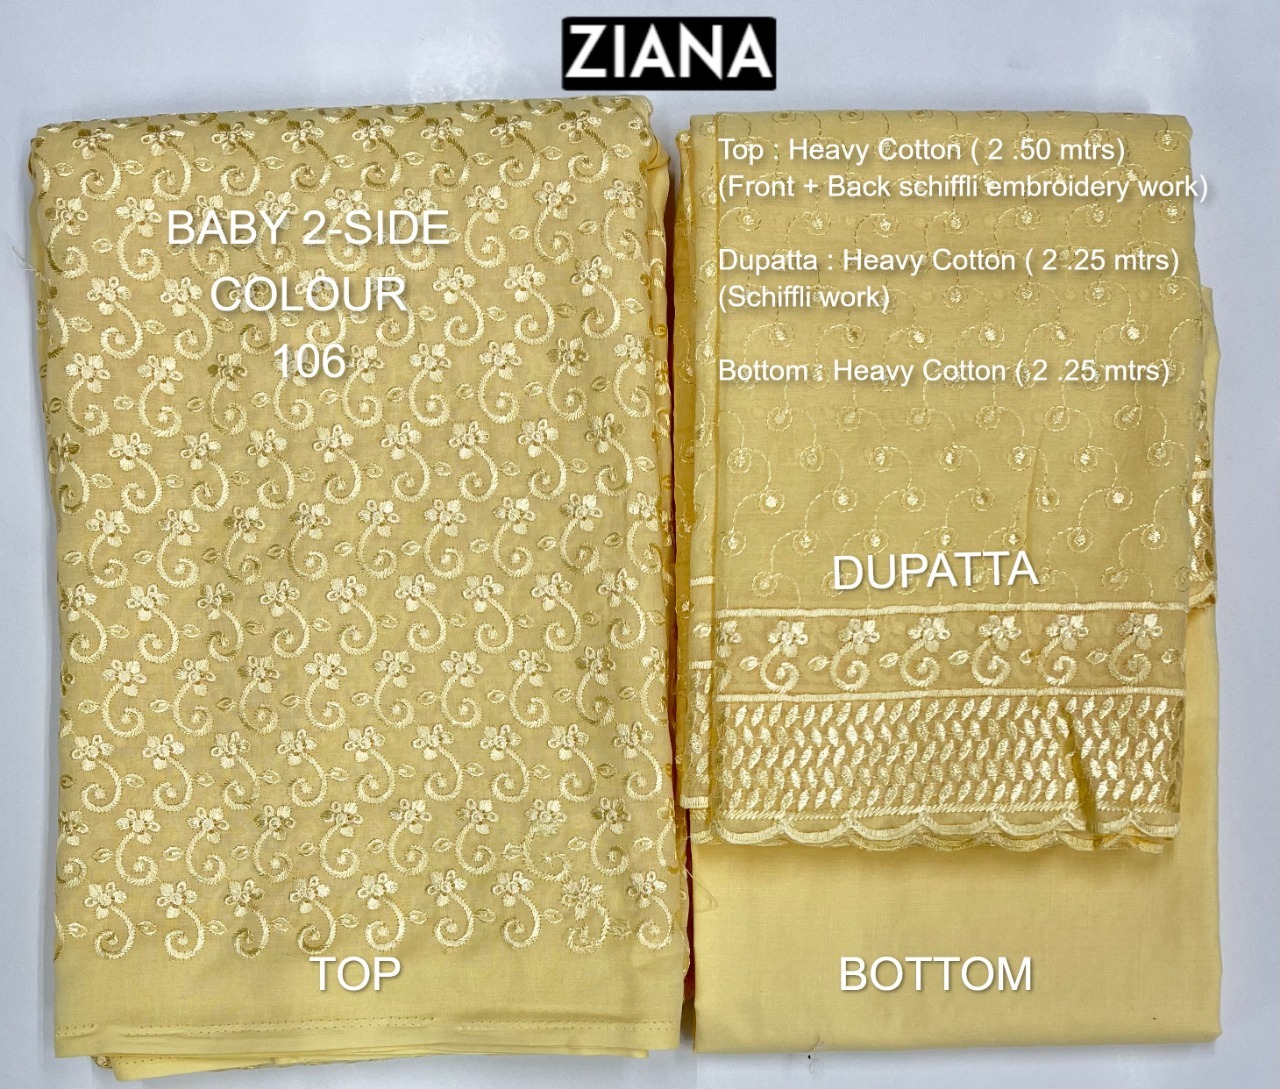 ziana baby 2 side colour 106 cotton decent embroidery salwar suit colour set